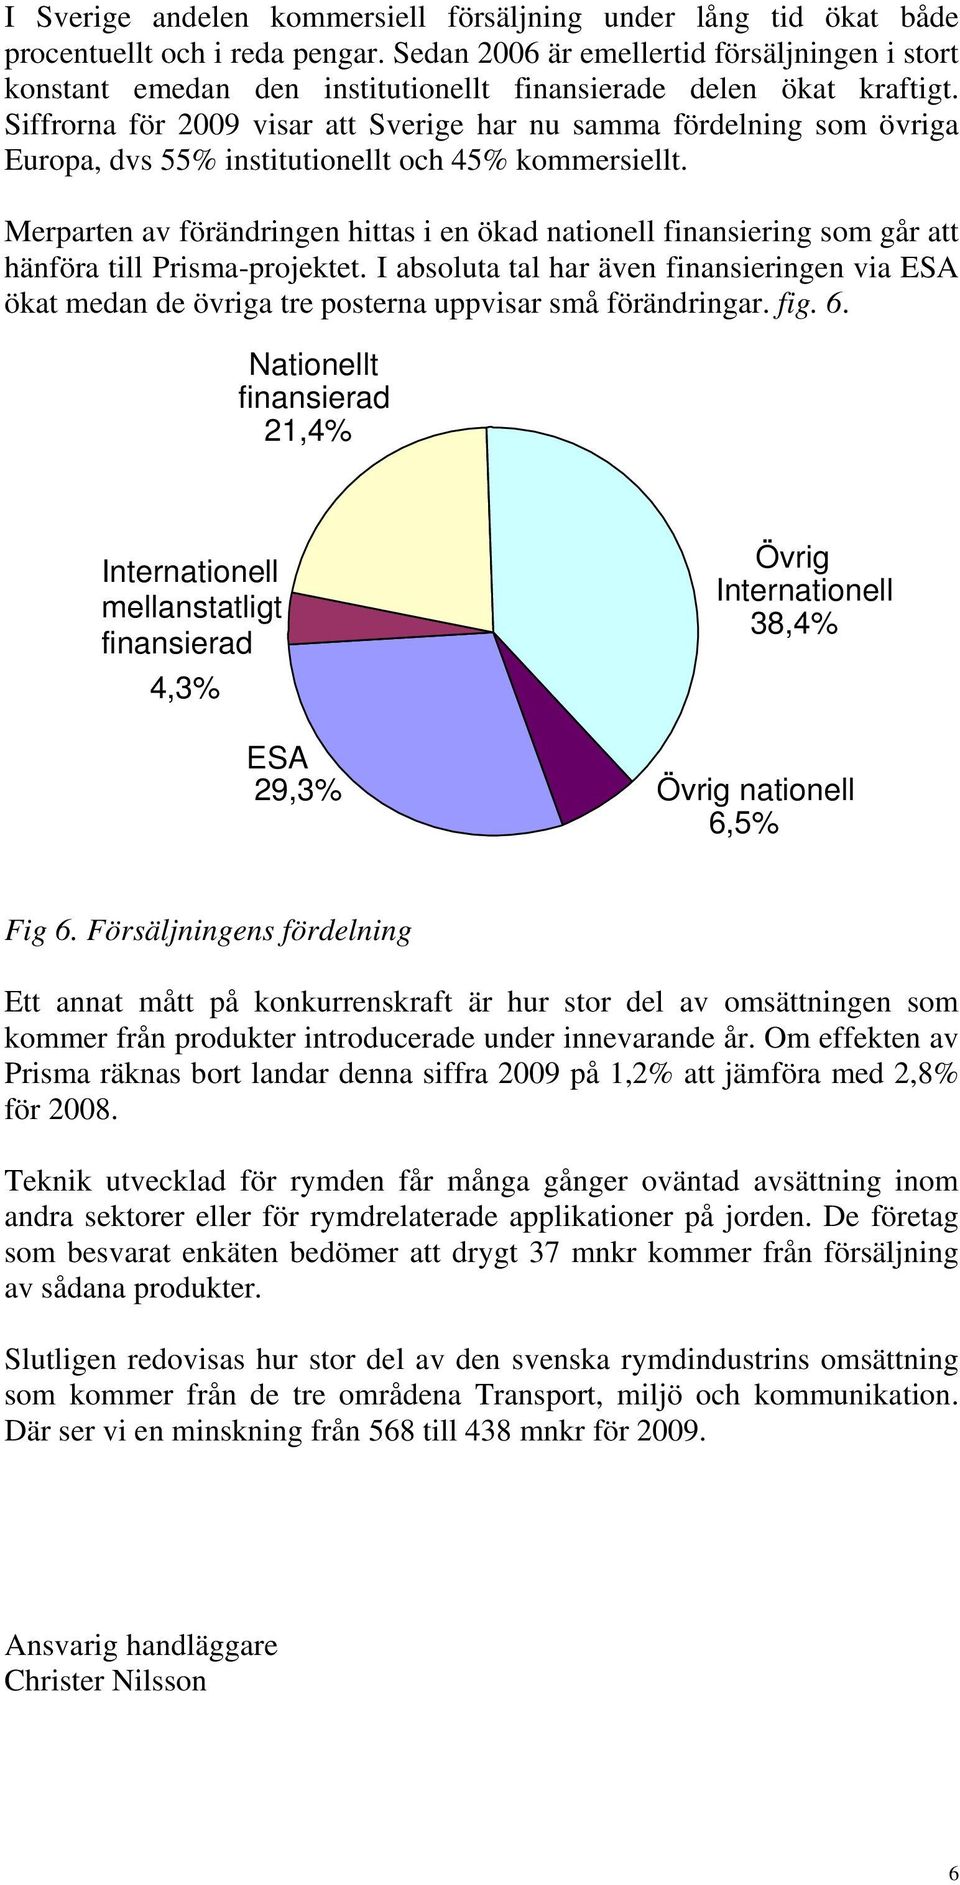 Siffrorna för 2009 visar att Sverige har nu samma fördelning som övriga Europa, dvs 55% institutionellt och 45% kommersiellt.